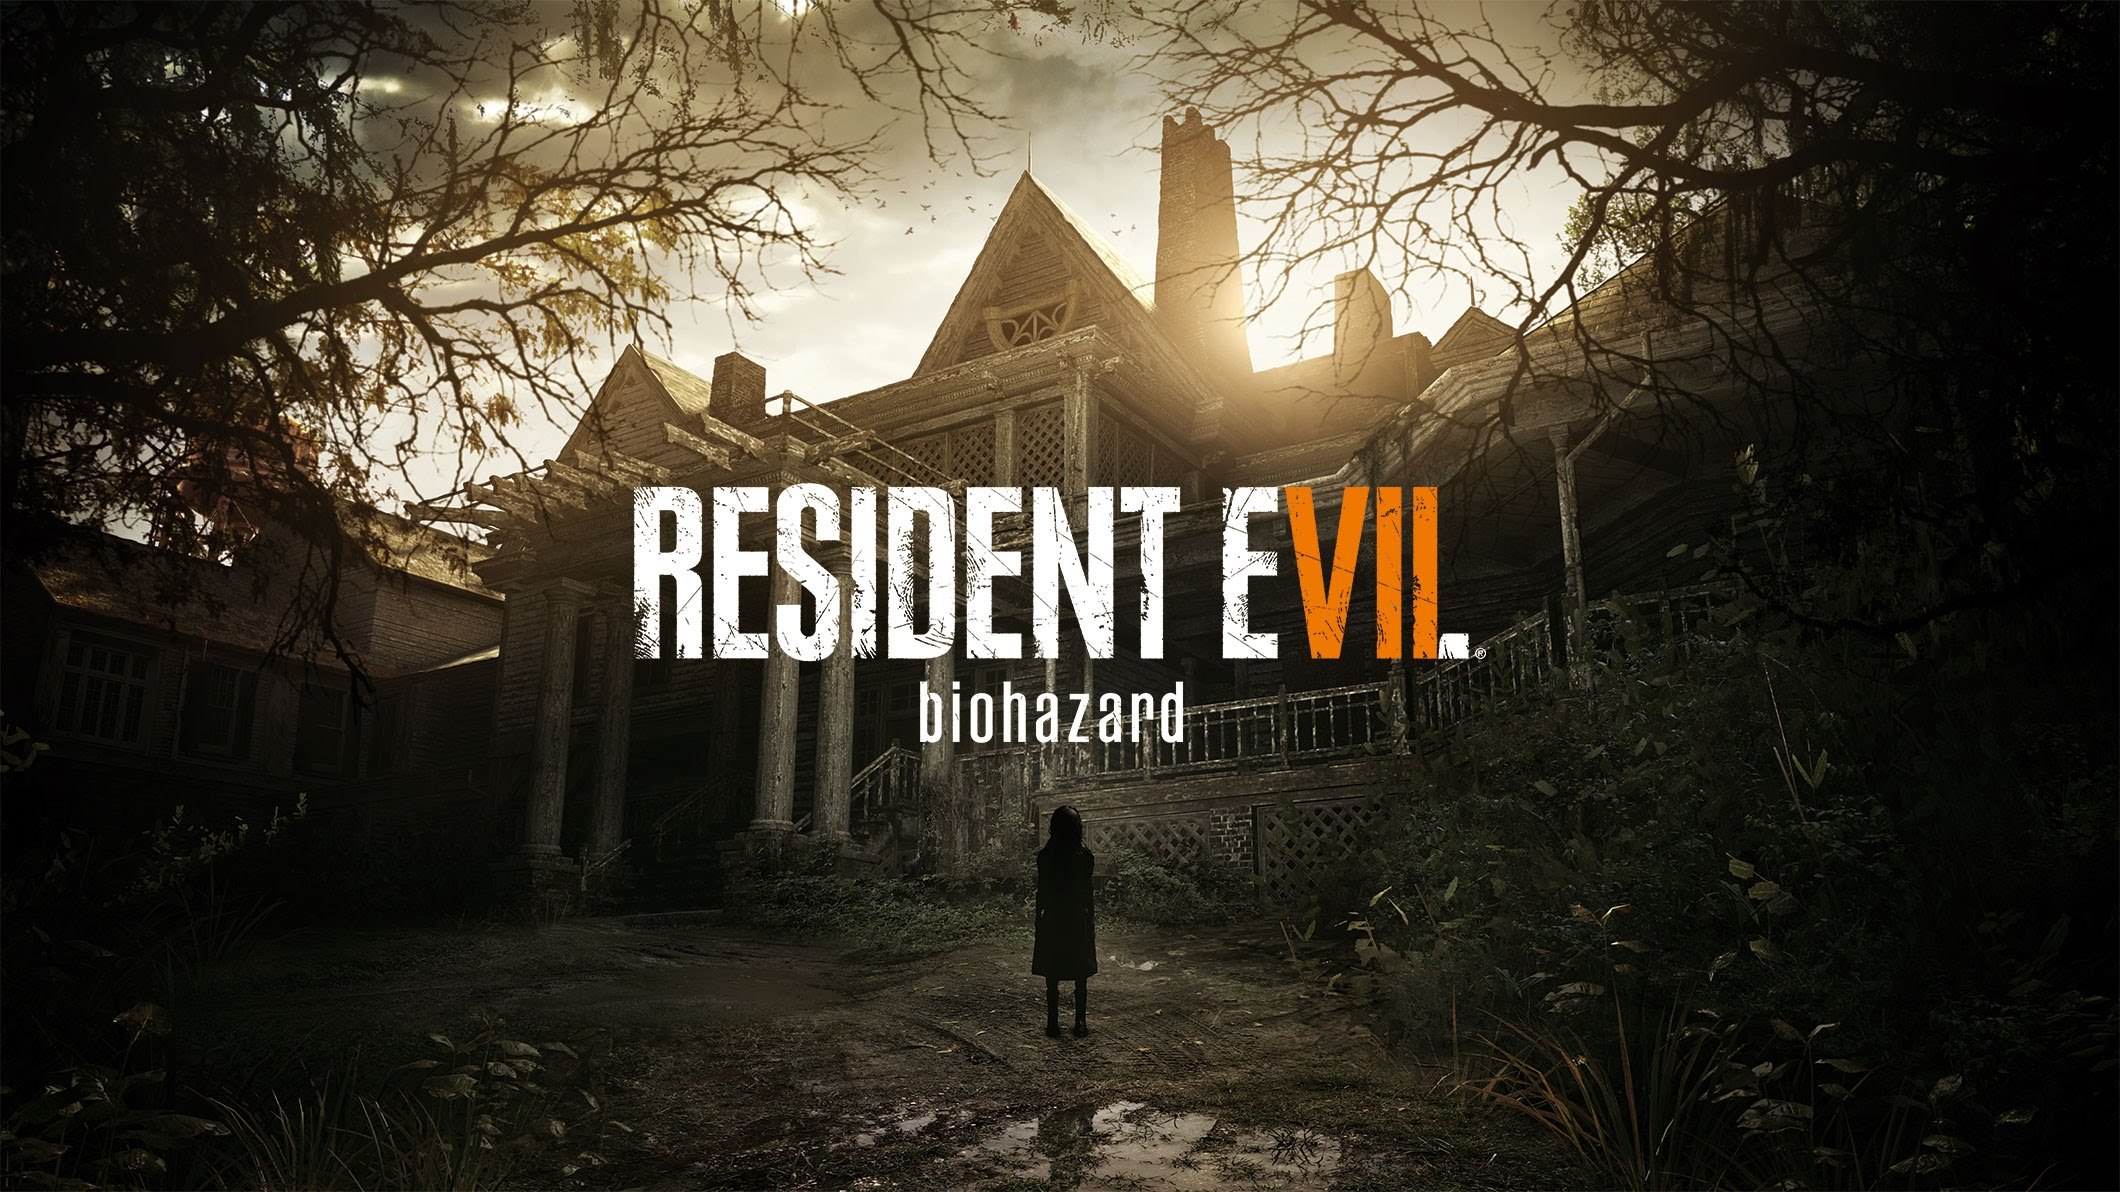 Теории и догадки относительно сюжета и происходящей чертовщины в Resident Evil VII